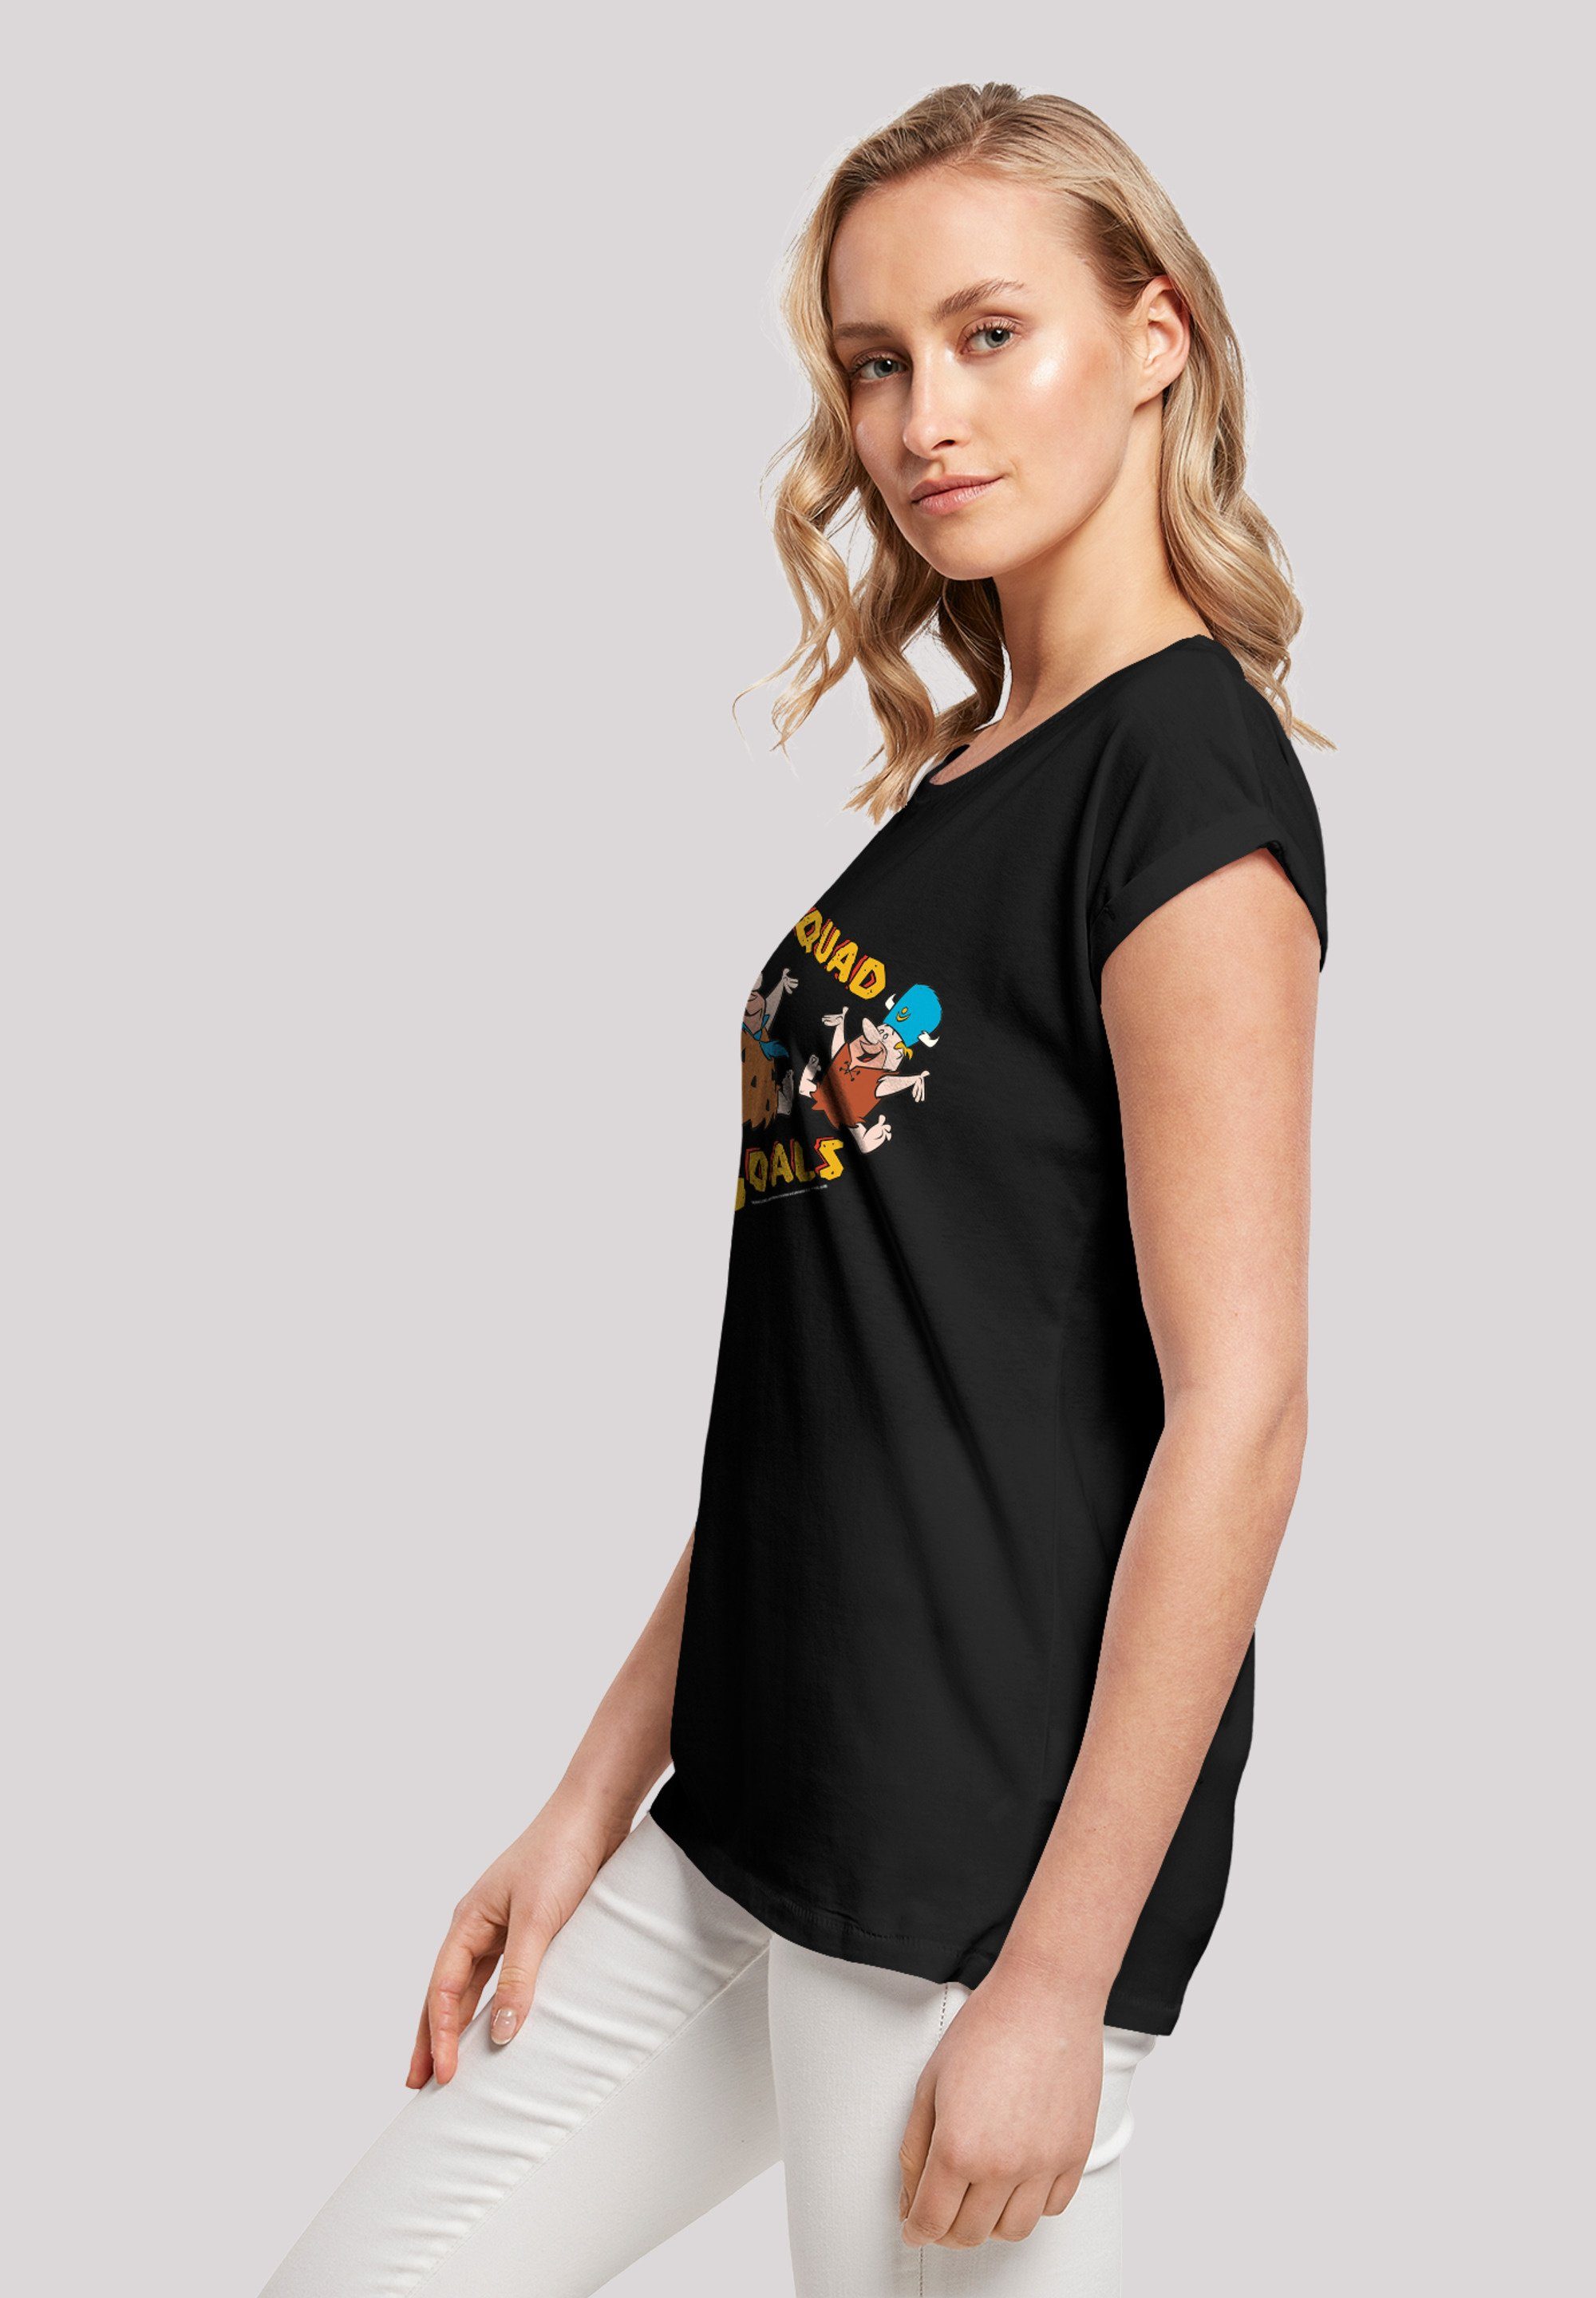 T-Shirt T-Shirt Ärmel,Bedruckt F4NT4STIC F4NT4STIC Merch,Regular-Fit,Kurze Damen,Premium